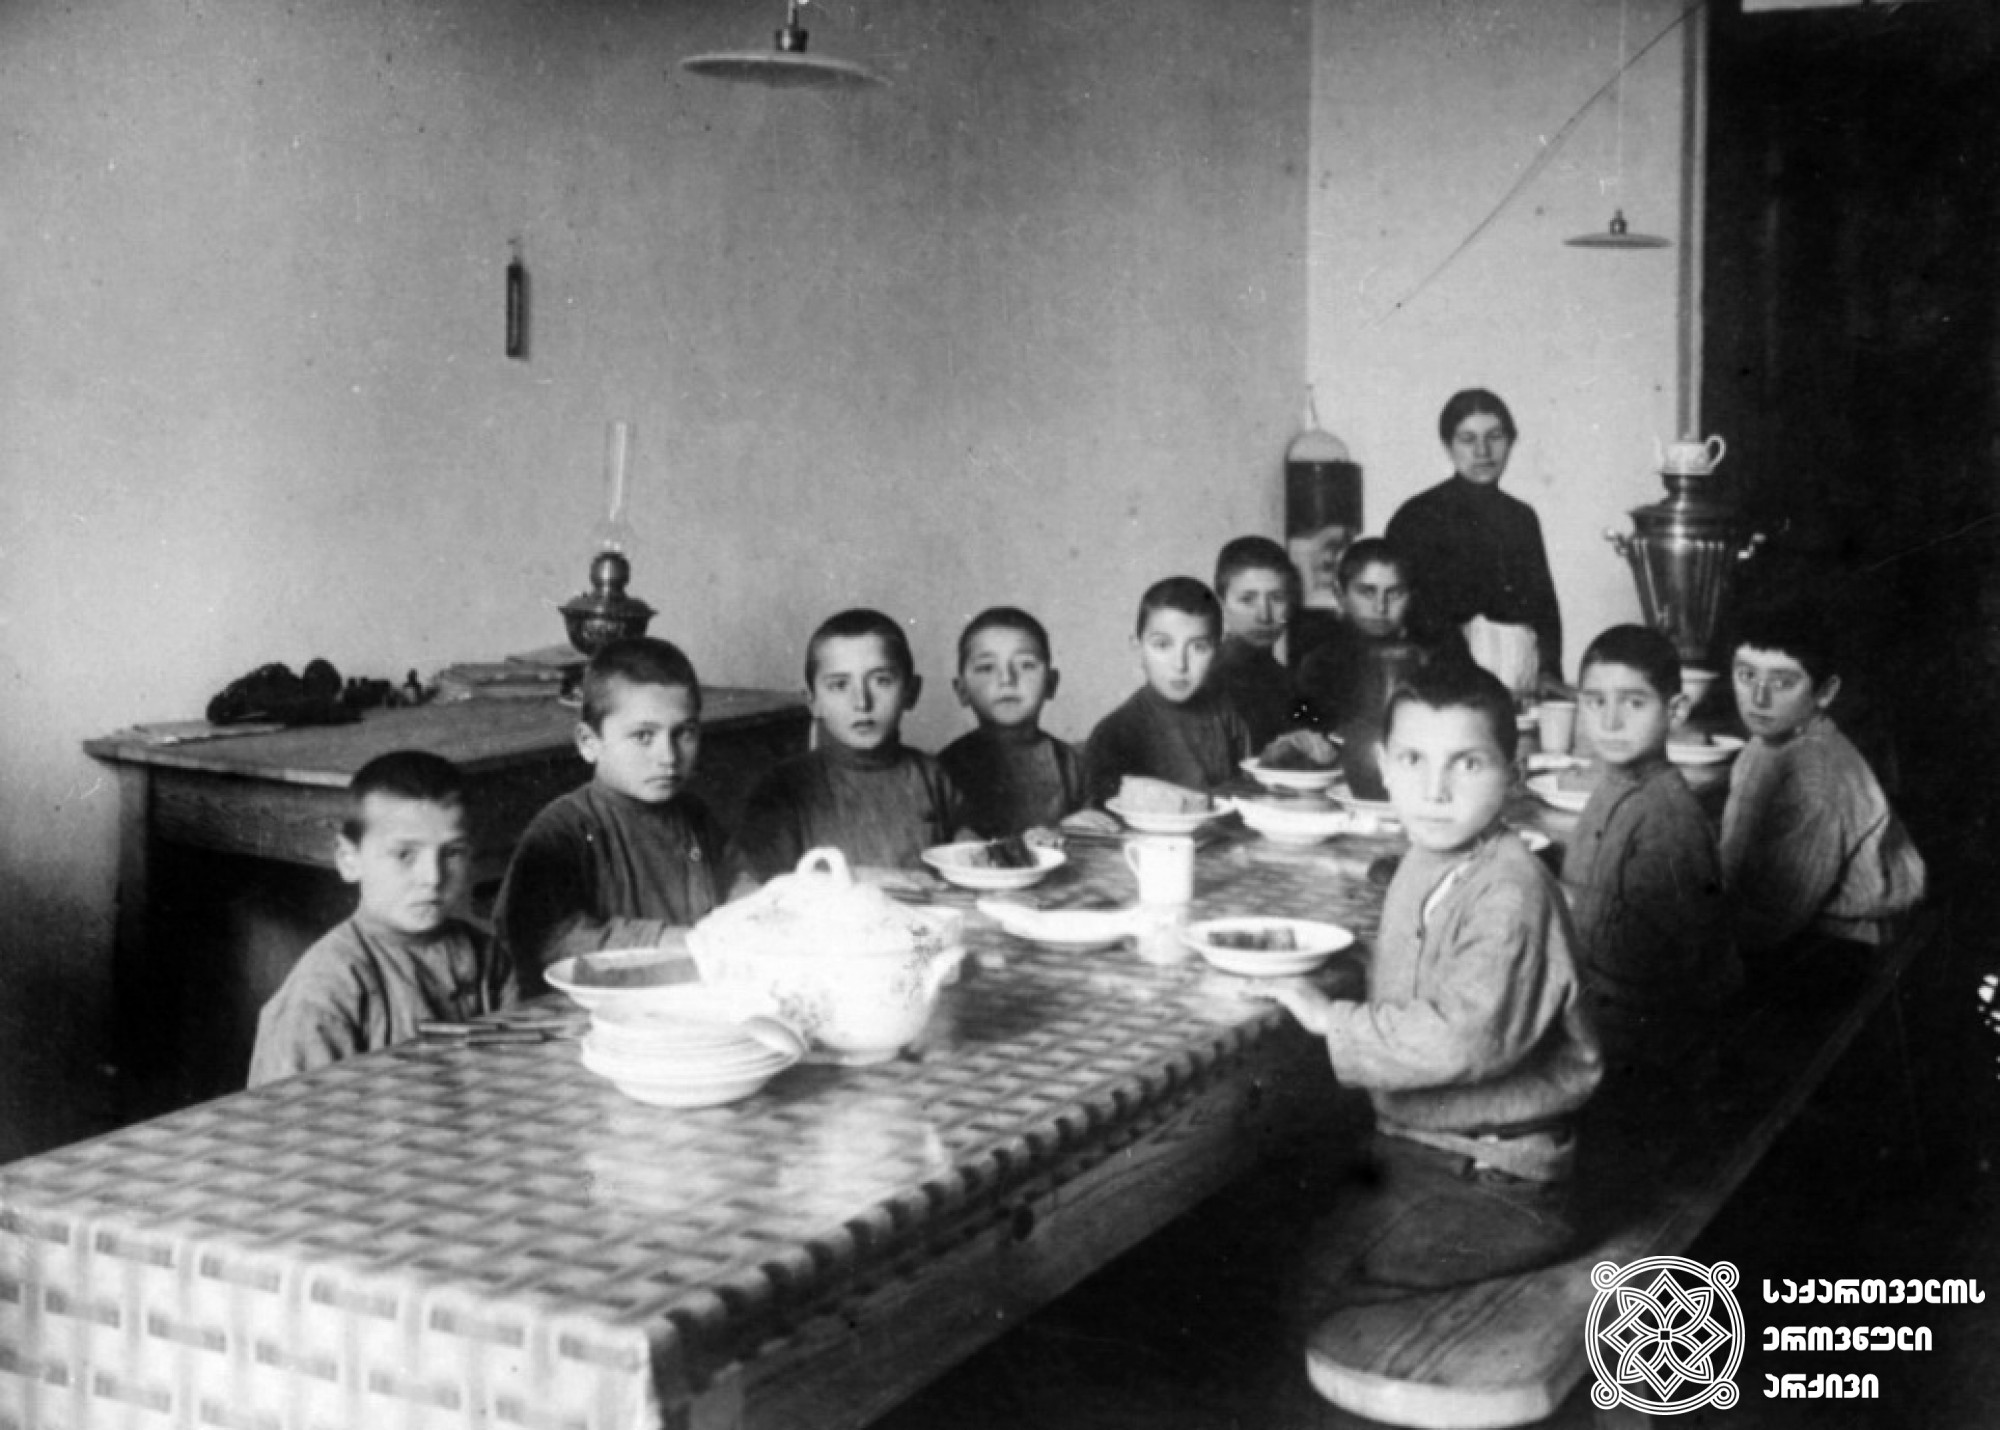 სოხუმის  სასწავლებელთან  არსებული  თავშესაფრის ბავშვები  სადილობის  დროს <br>
1916  წელი <br>
Children of the Sokhumi school near the shelter during lunch <br>
1916